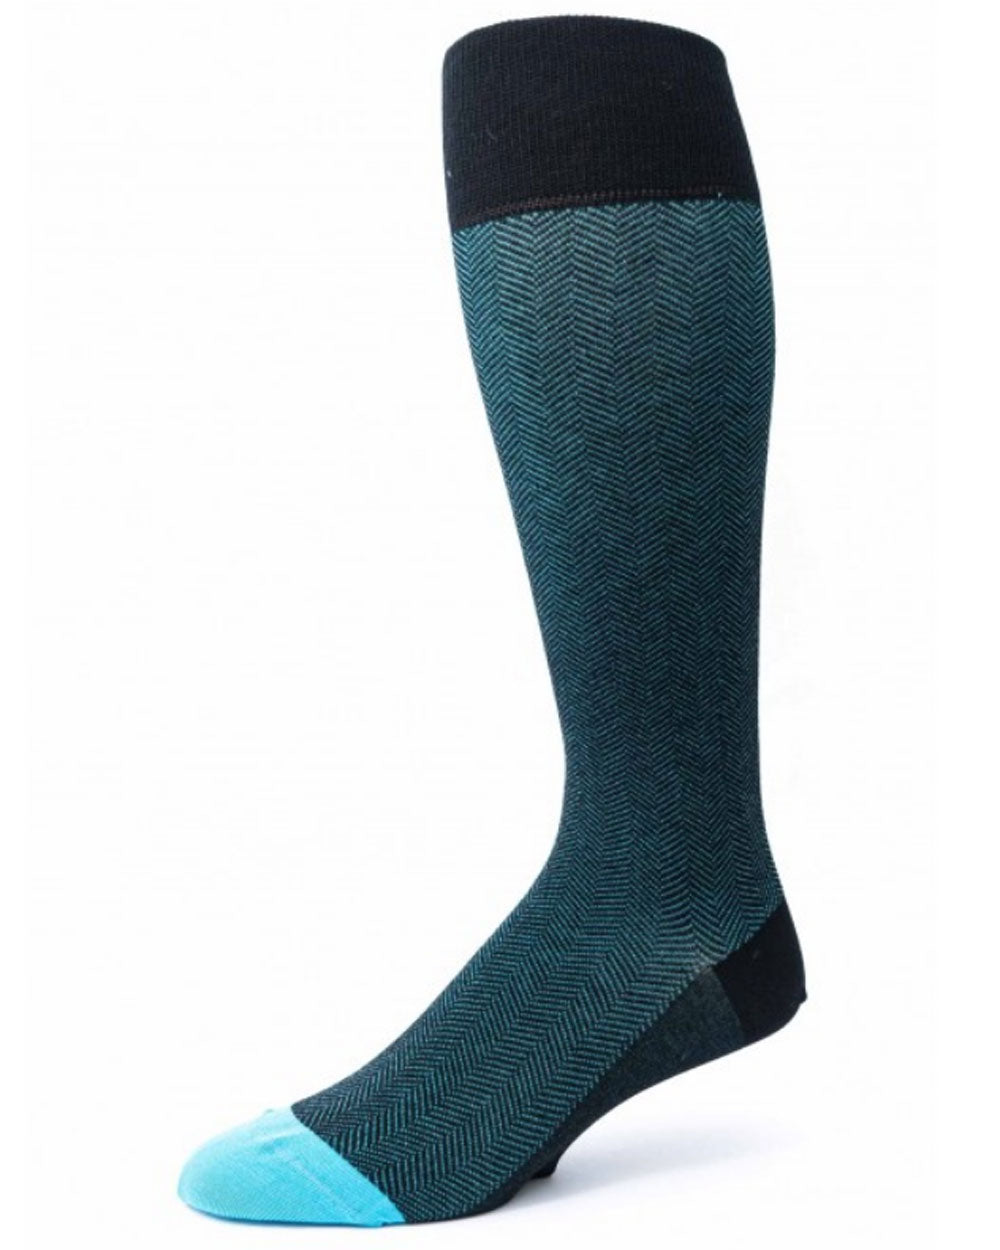 Herringbone Over the Calf Socks in Black and Blue